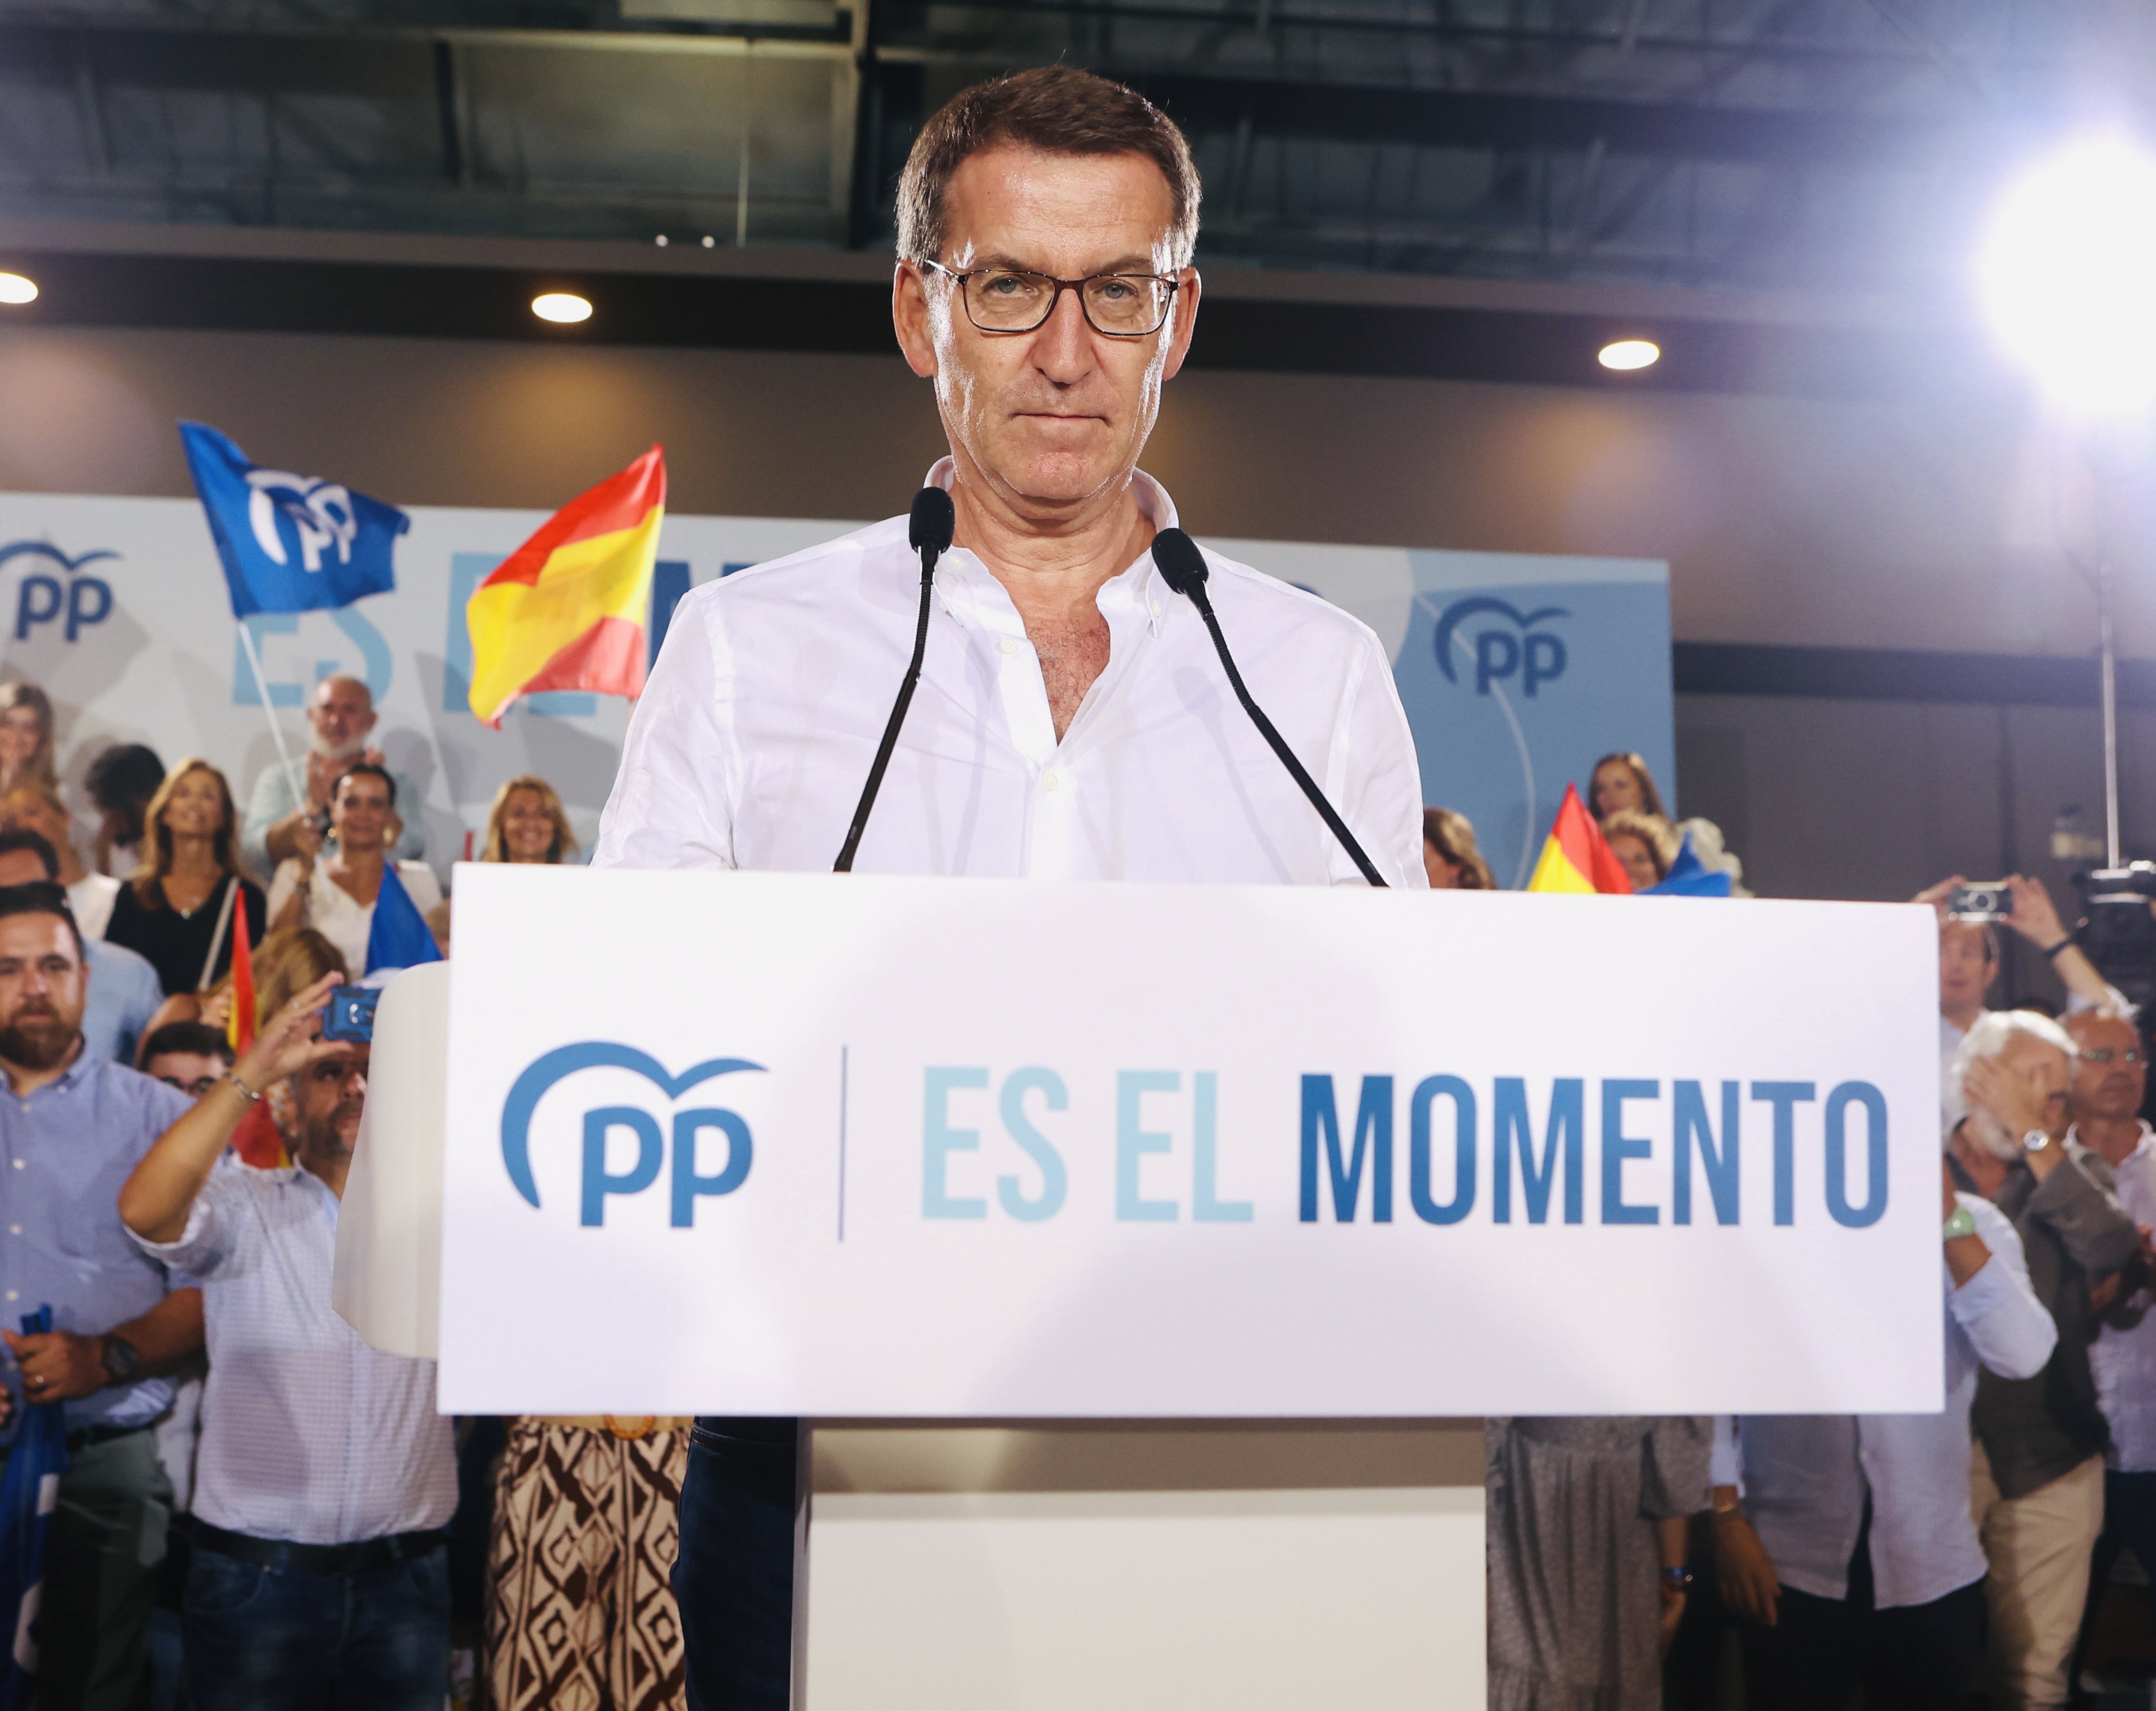 El cara a cara entre Pedro Sánchez i Núñez Feijóo revifa el PP a les enquestes